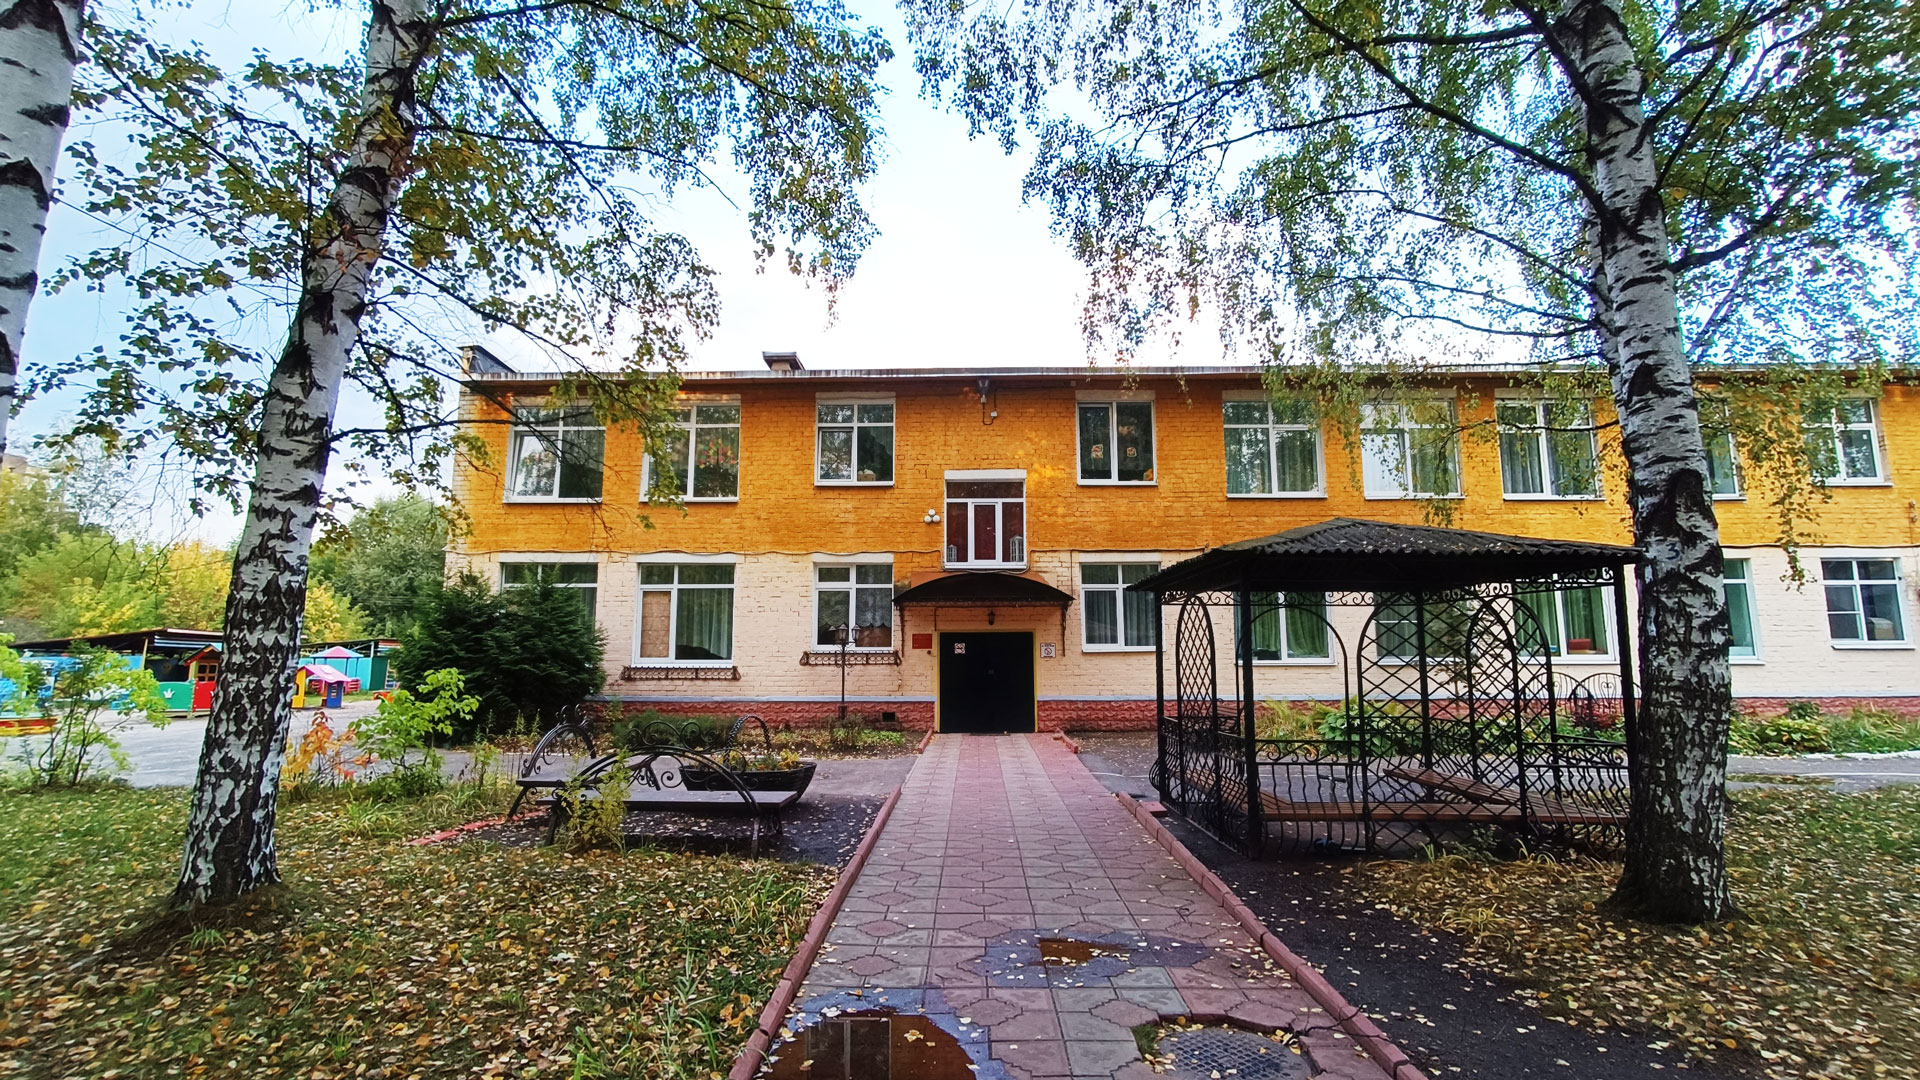 Детский сад 23 Ярославль: общий вид здания.